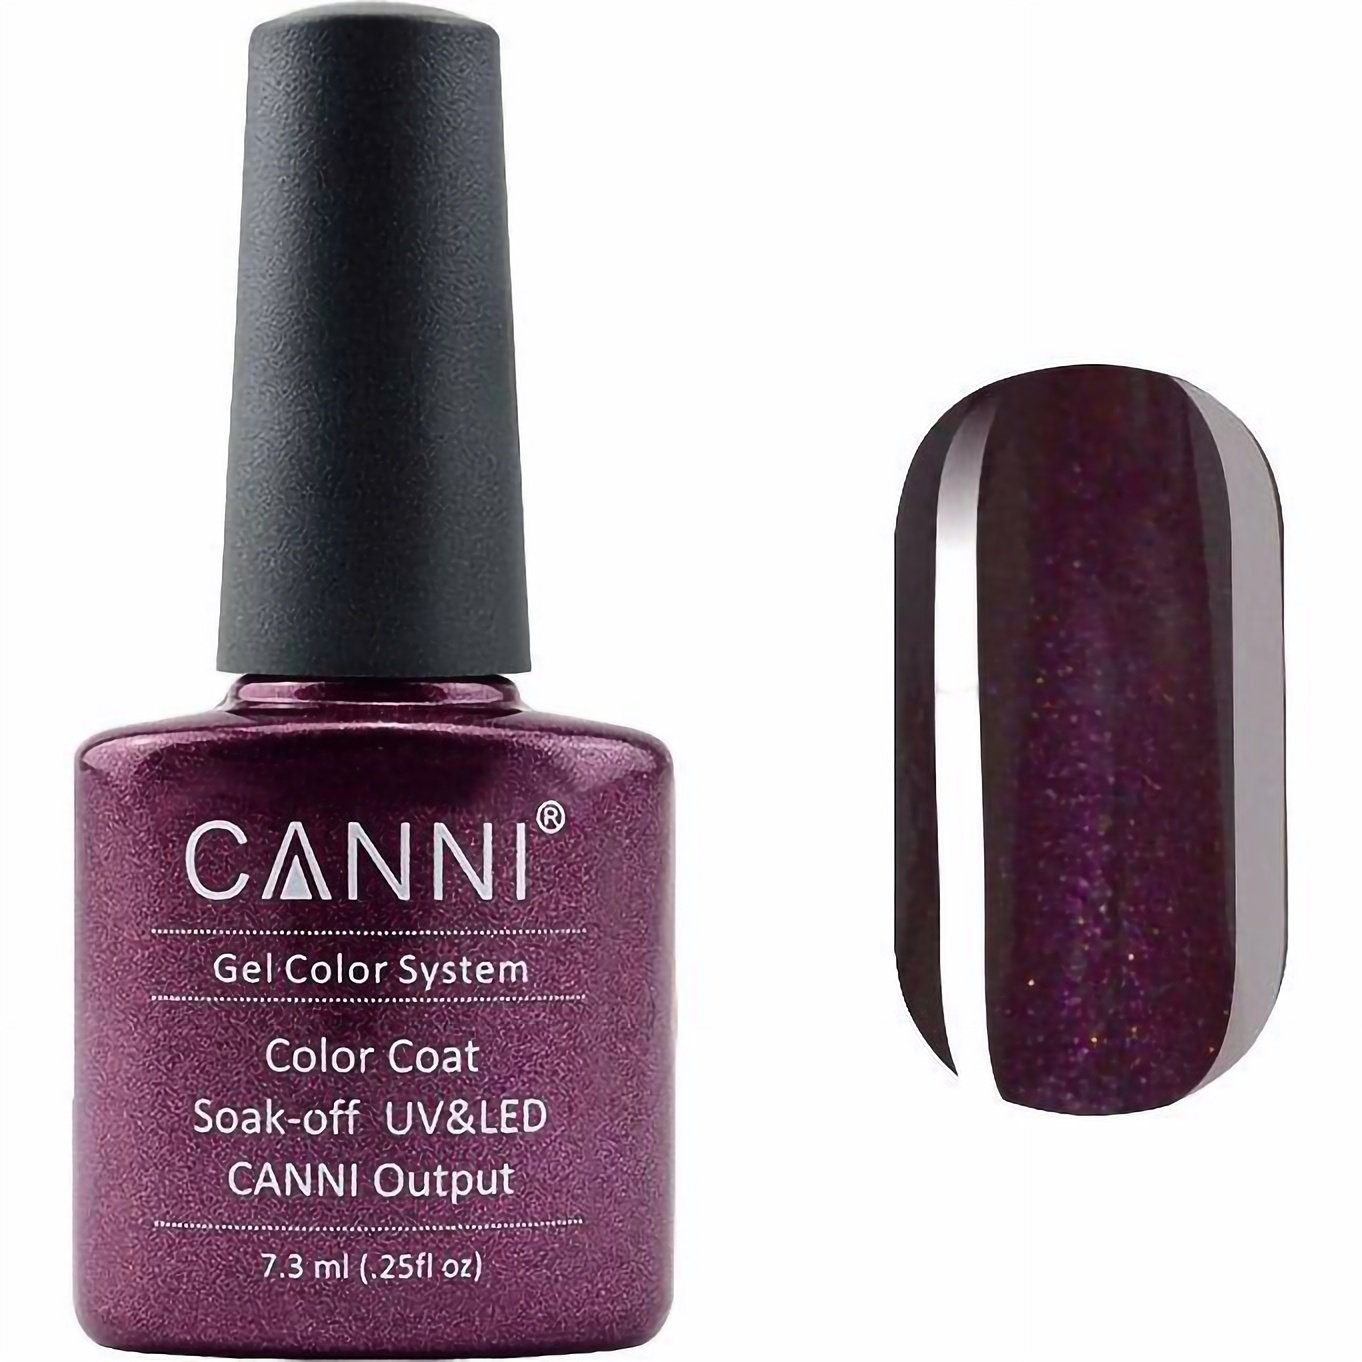 Гель-лак Canni Color Coat Soak-off UV&LED 212 винний з мікроблиском 7.3 мл - фото 1